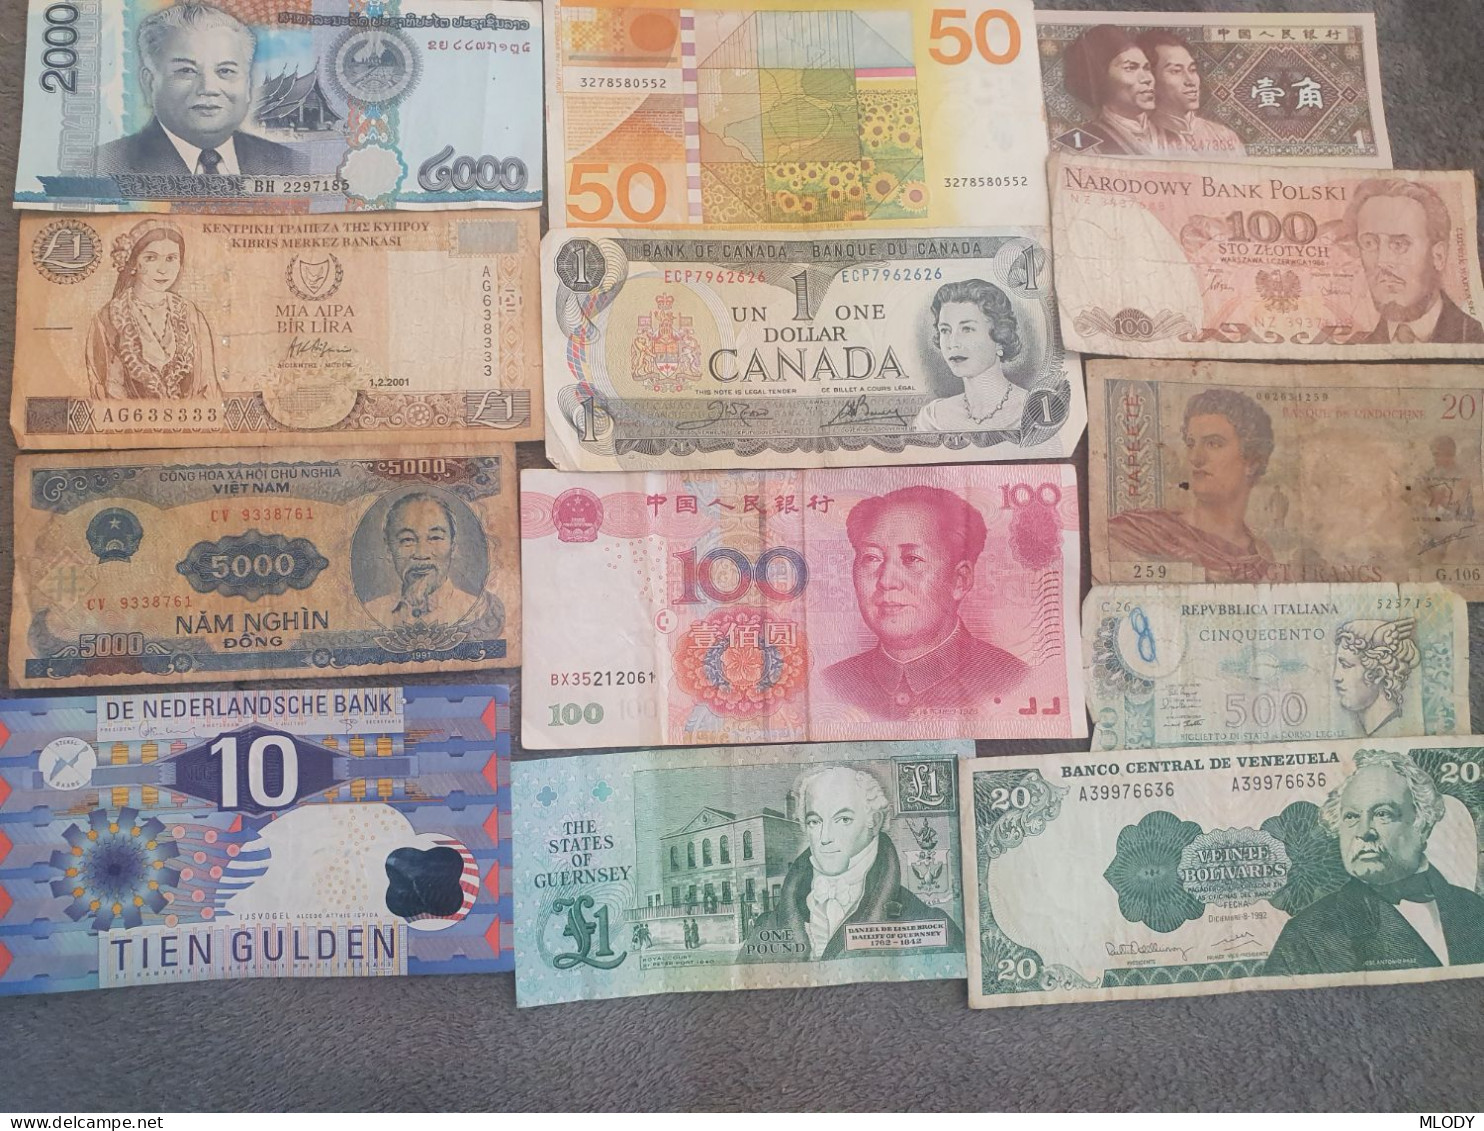 Set Of 15 Random Banknotes - Verzamelingen & Kavels